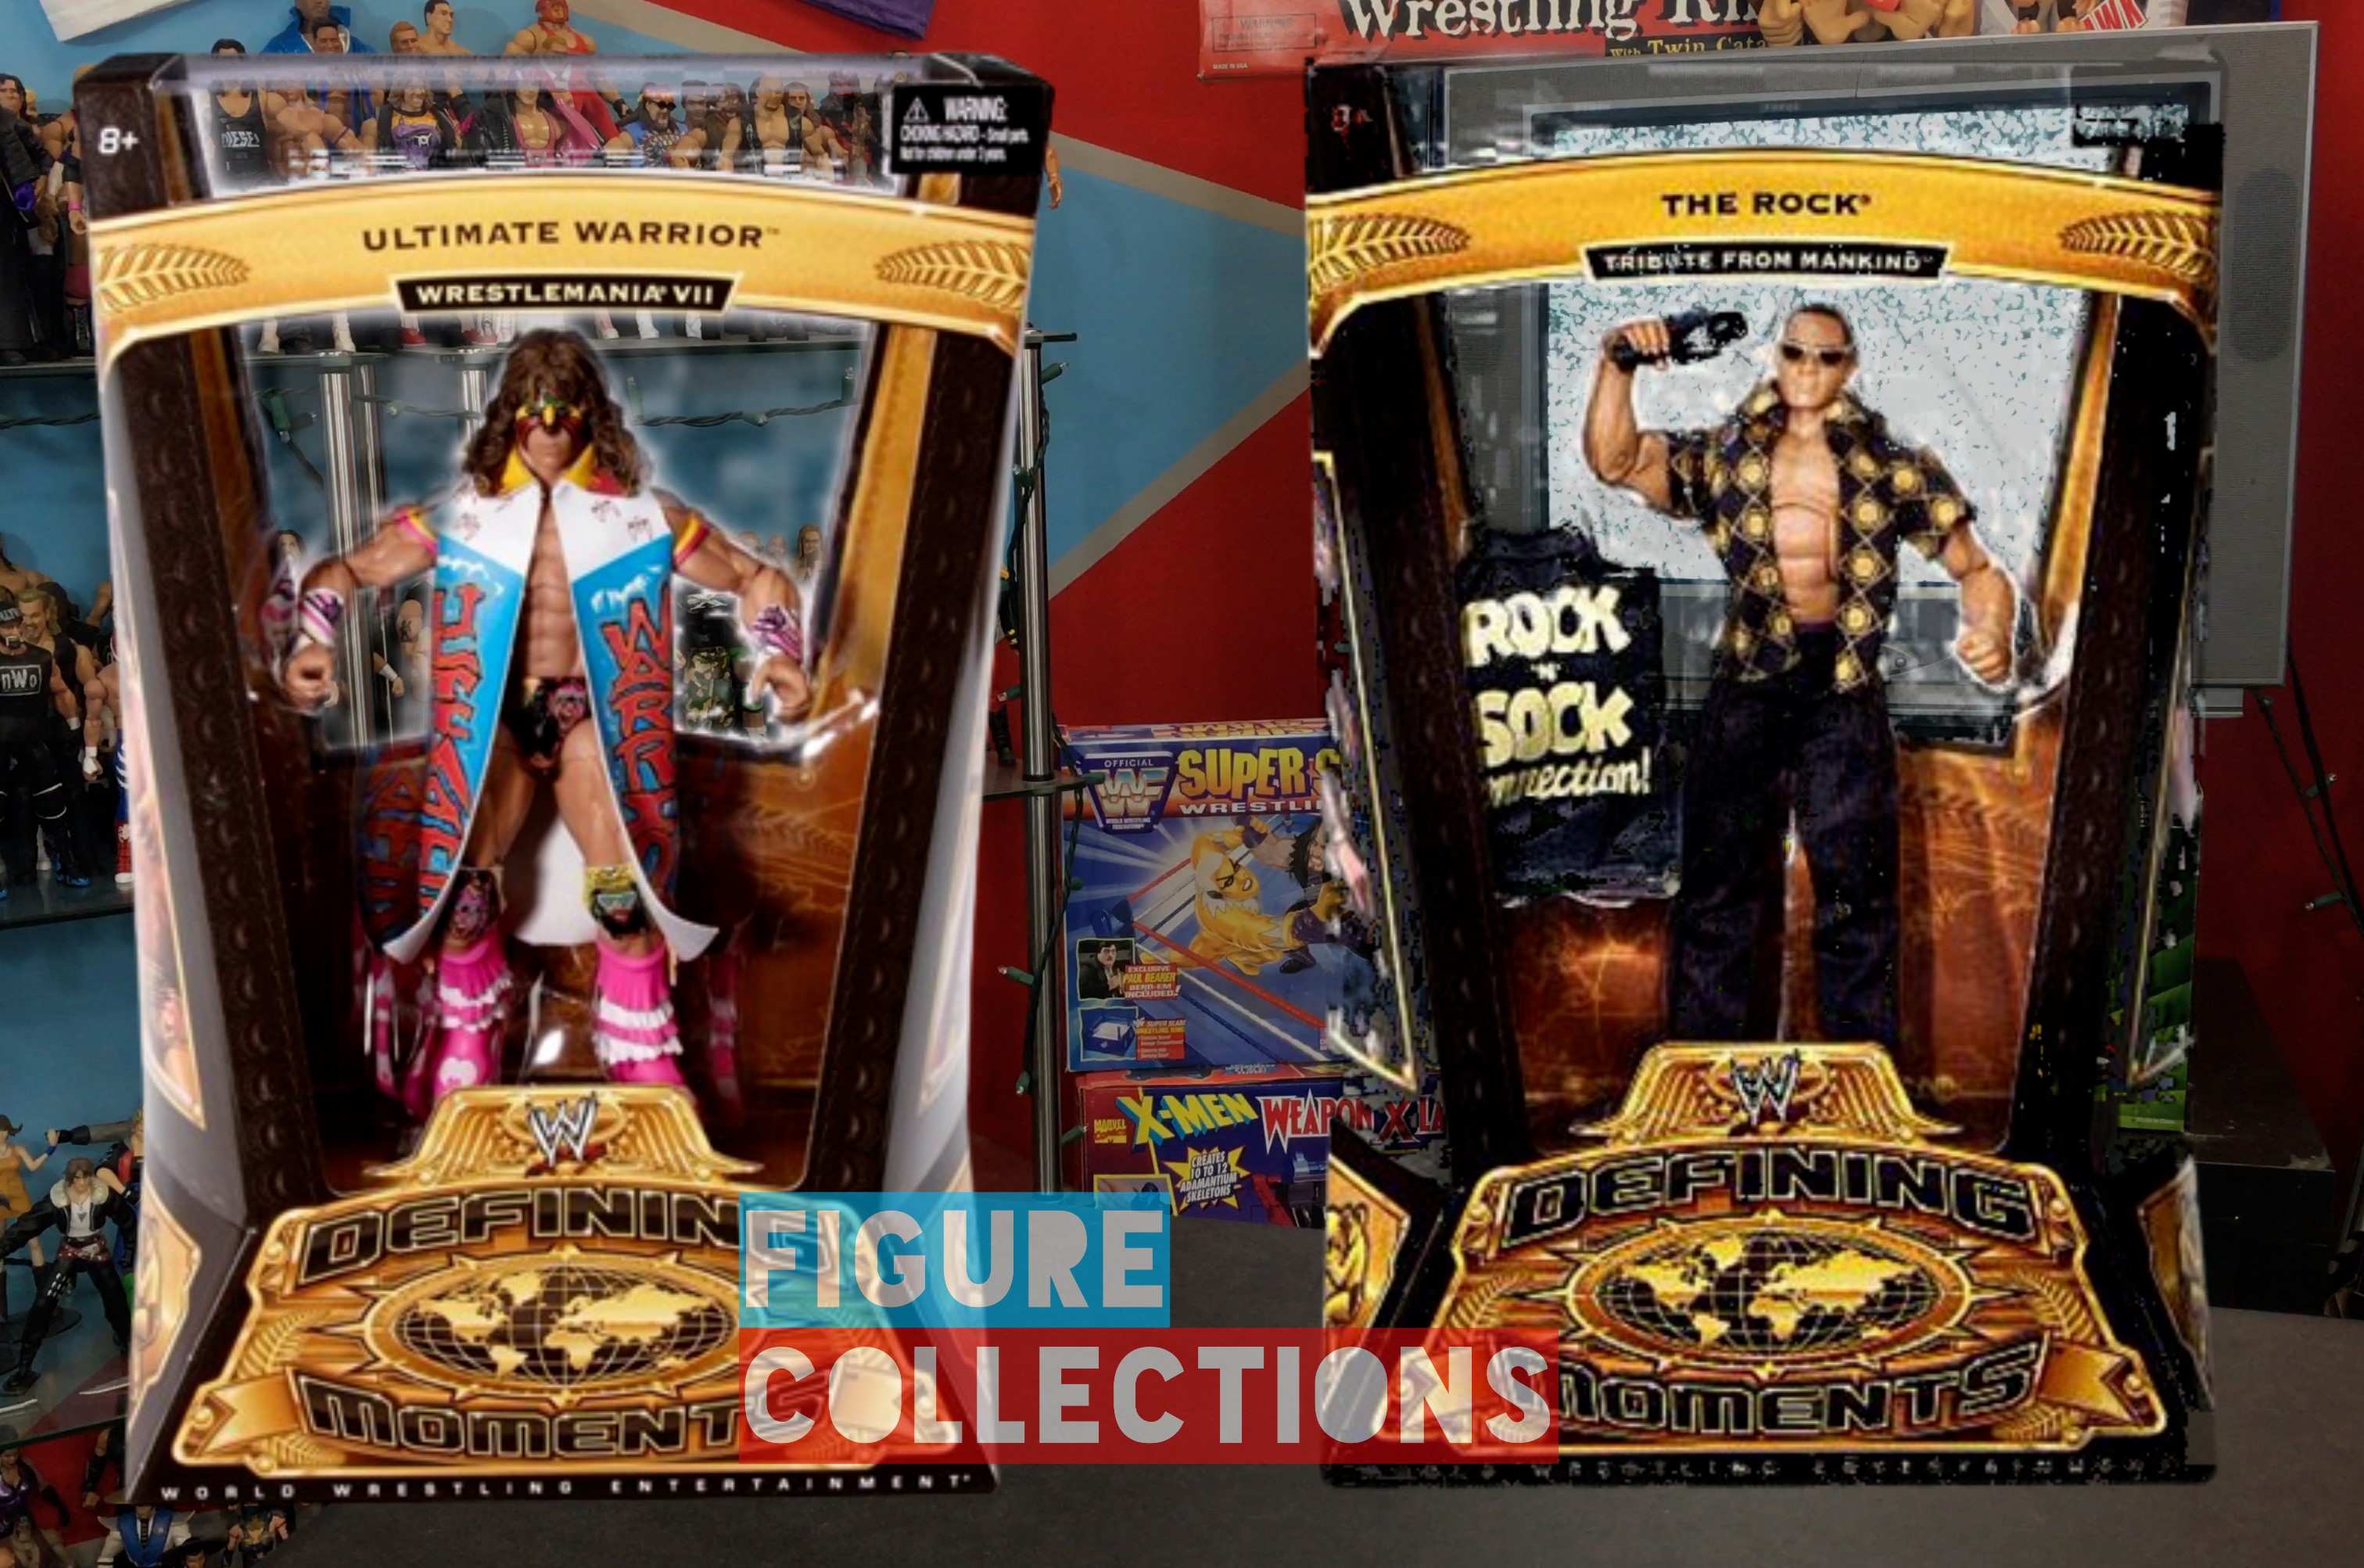 WWE Wrestling Mattel Elite Legends Series 2 The Rock Ultimate Warrior Figures Set Picture Checklist